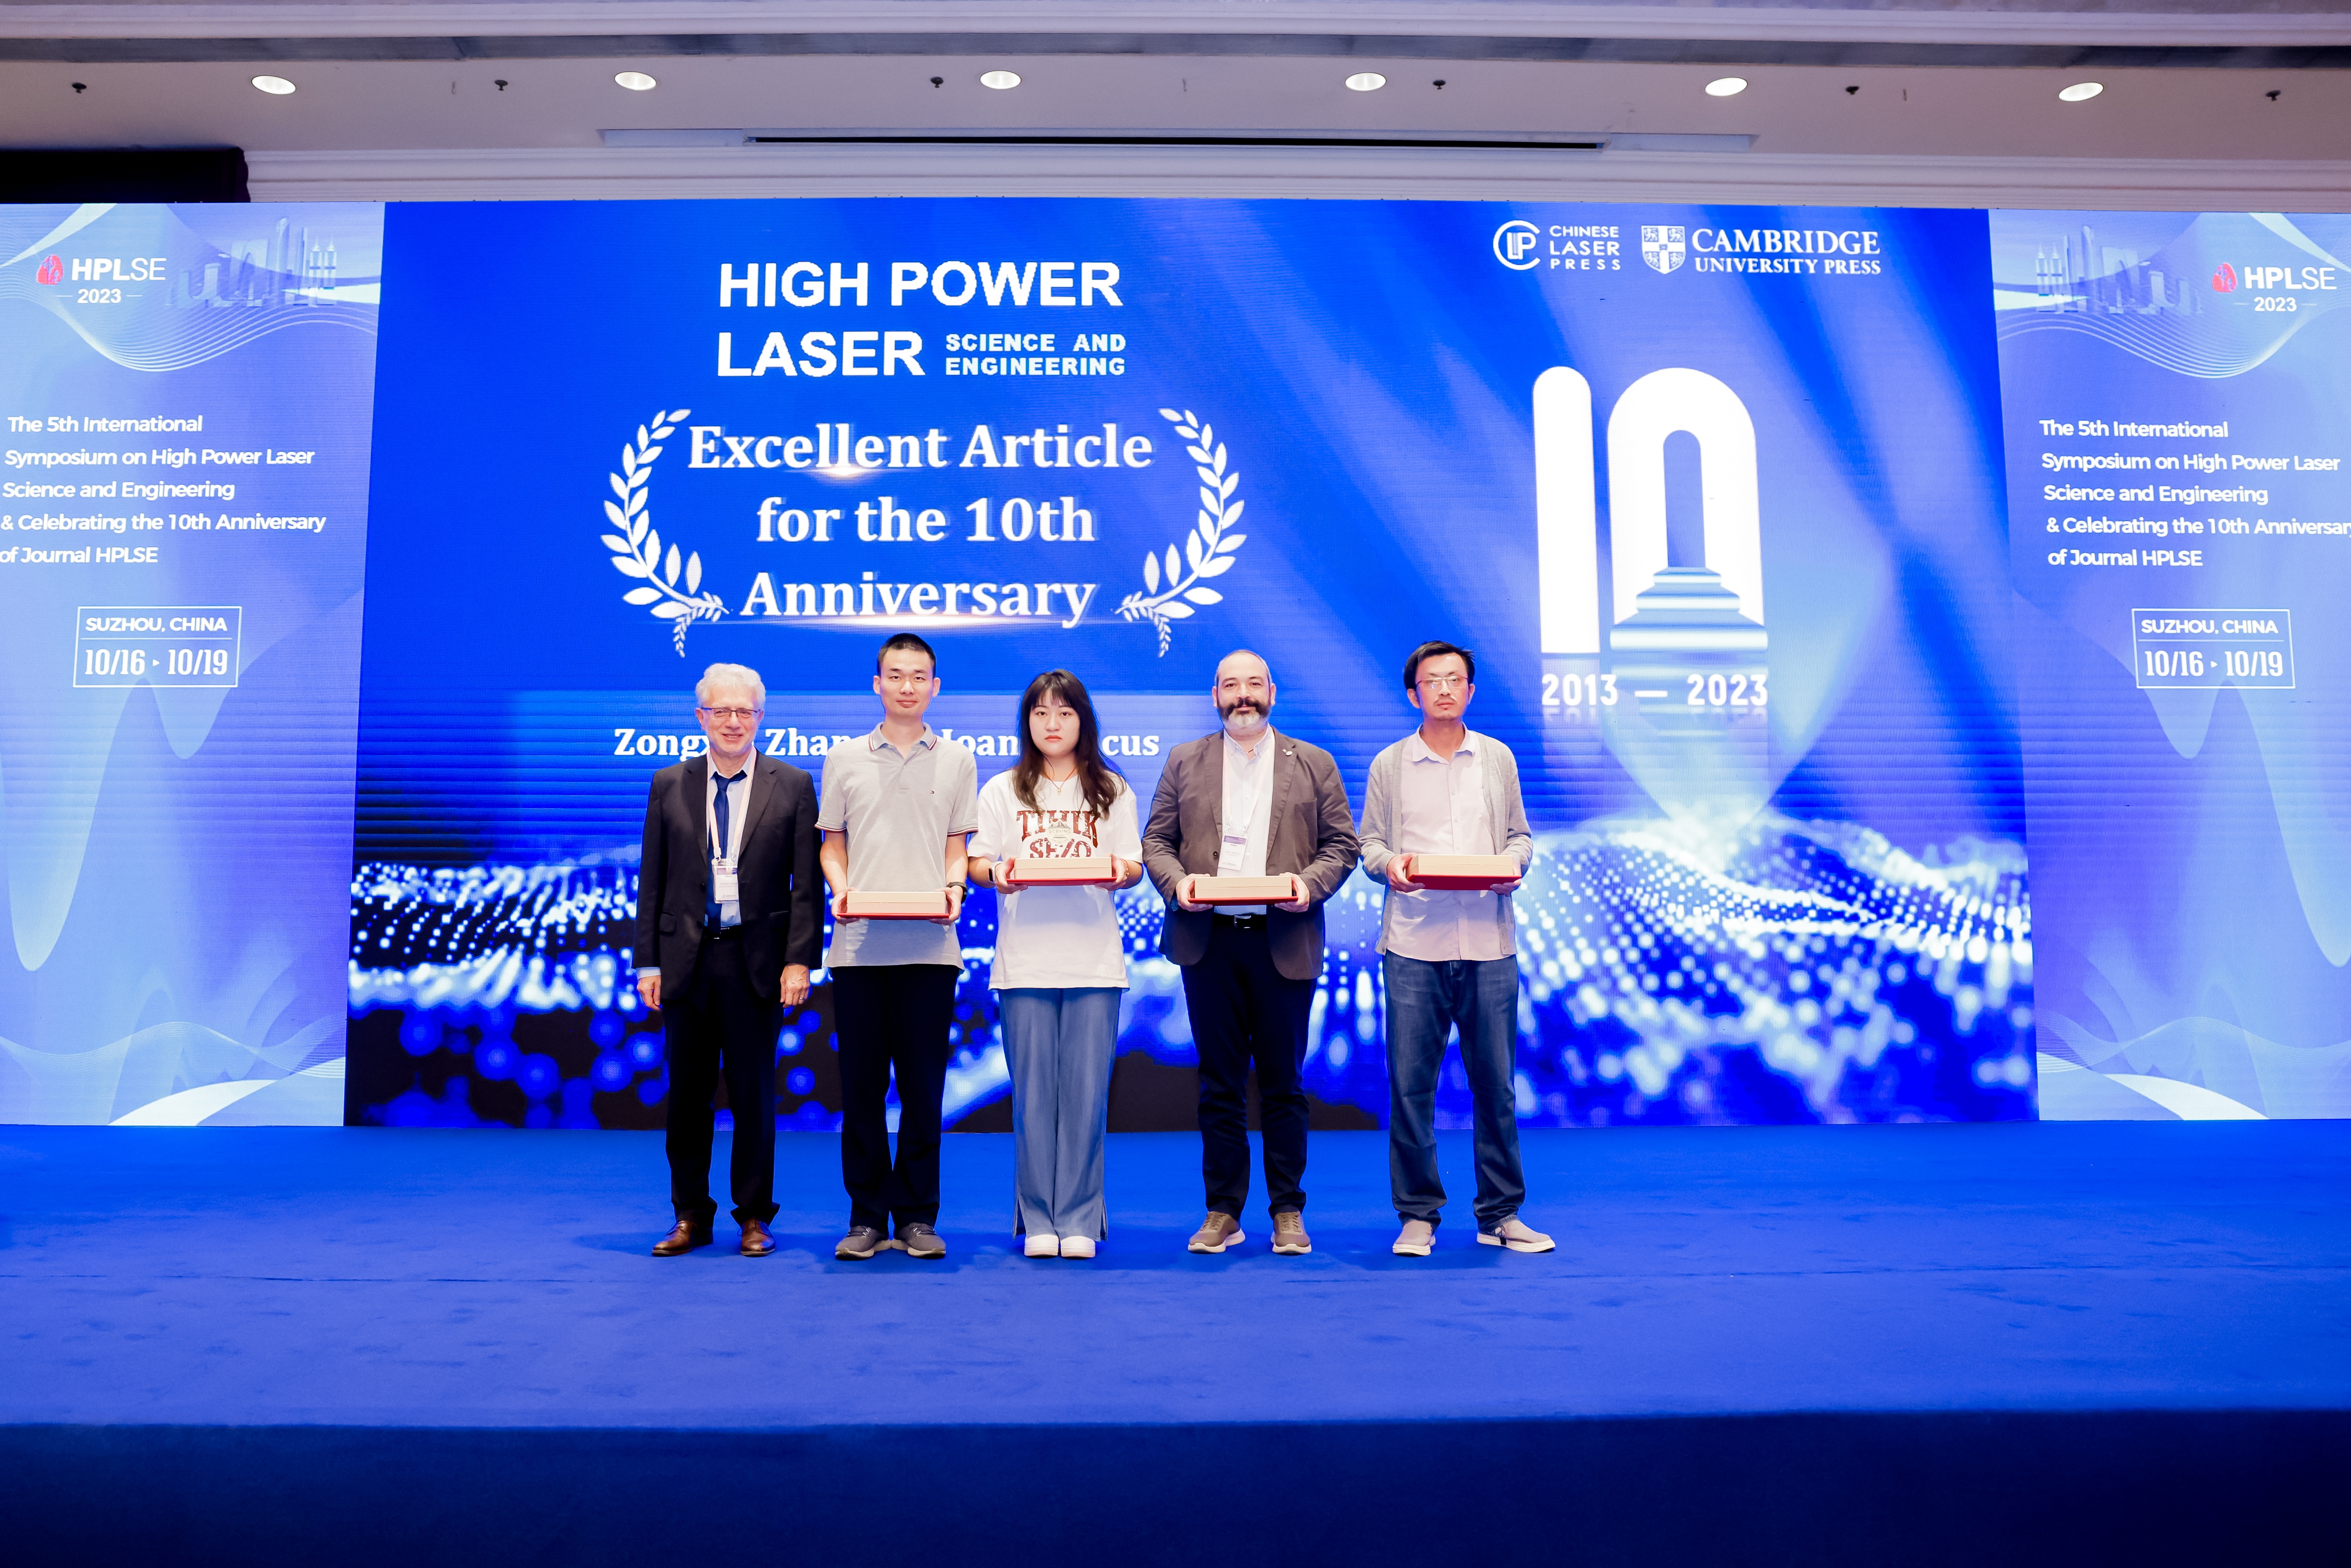 Award winners in attendance (Left to right: Dimitri Batani, Wei Liu, Xinyan Zhou, Zongxin Zhang)